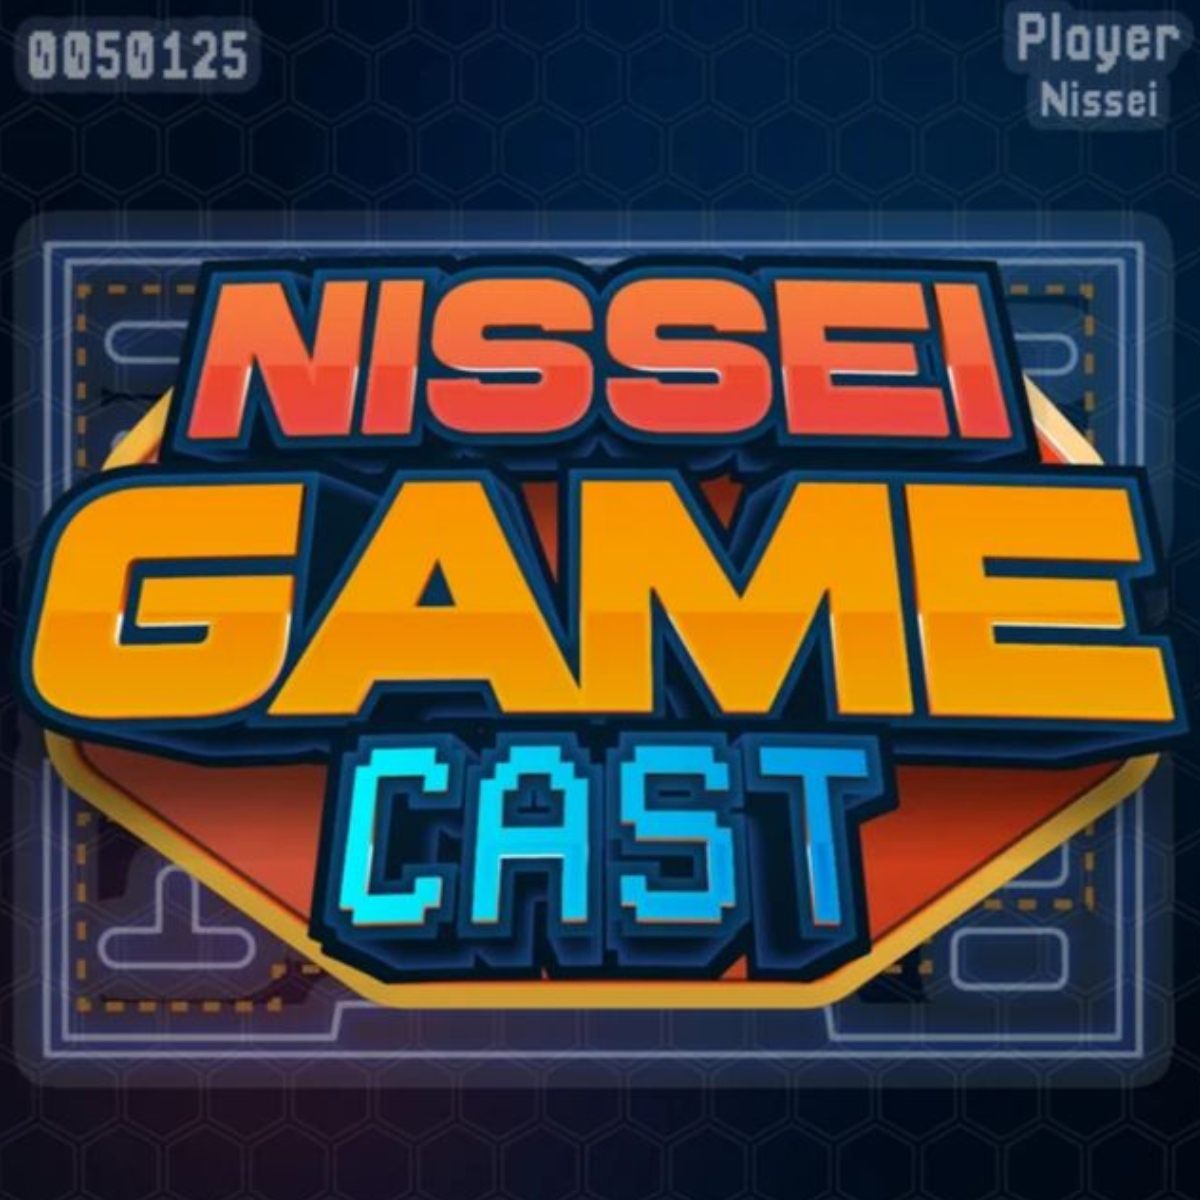  confira o último ep do nissei game cast 